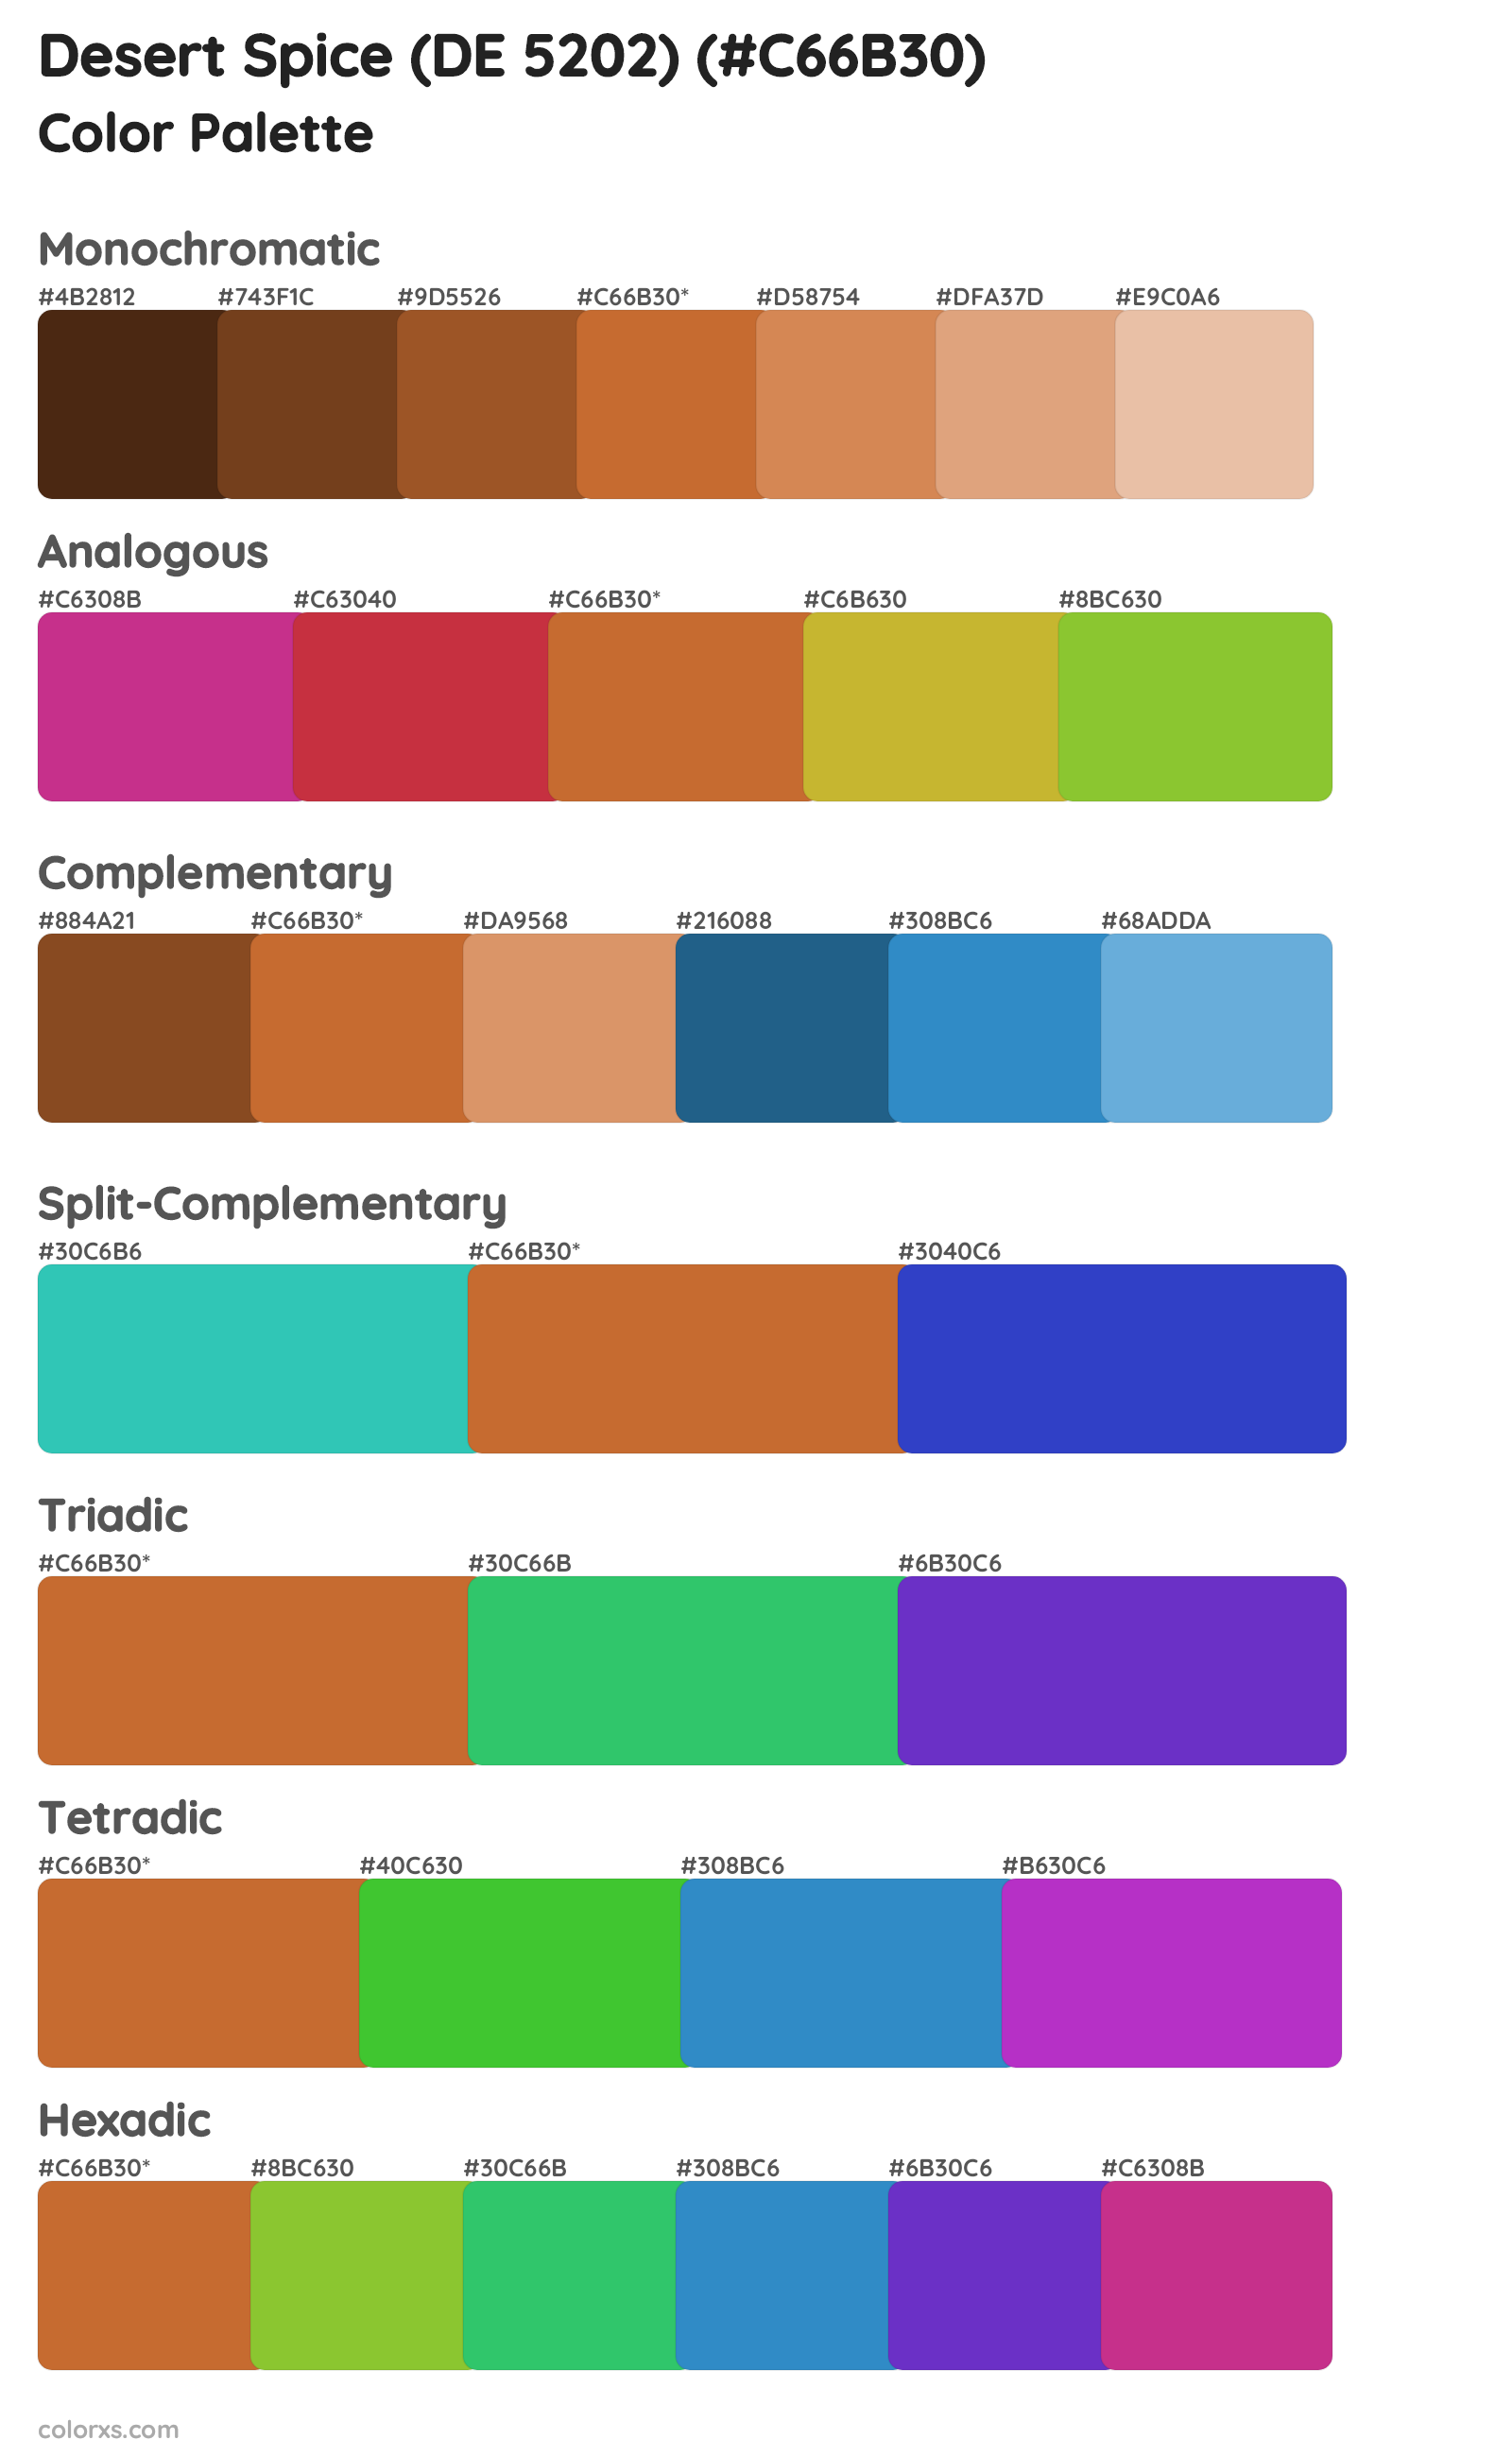 Desert Spice (DE 5202) Color Scheme Palettes